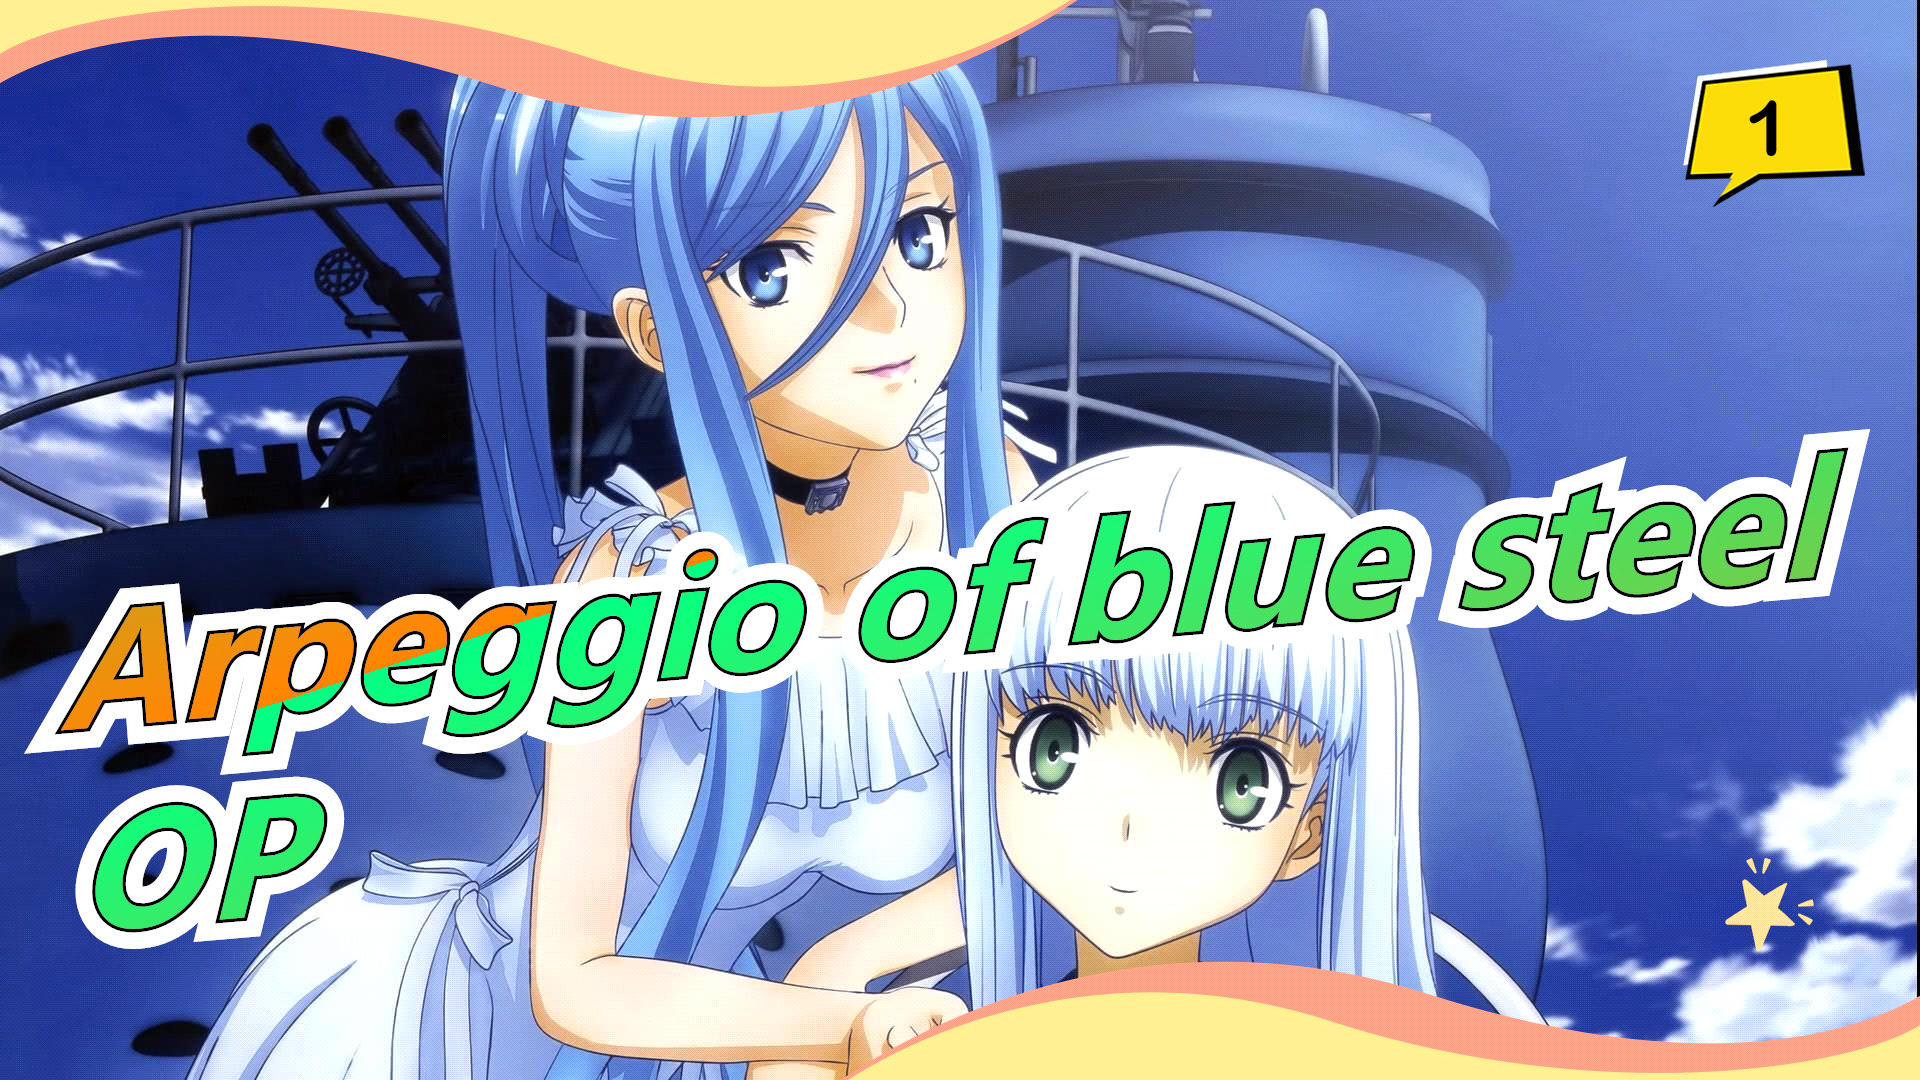 Aoki Hagane no Arpeggio Arpeggio Of Blue Steel  page 2 of 12  Zerochan  Anime Image Board